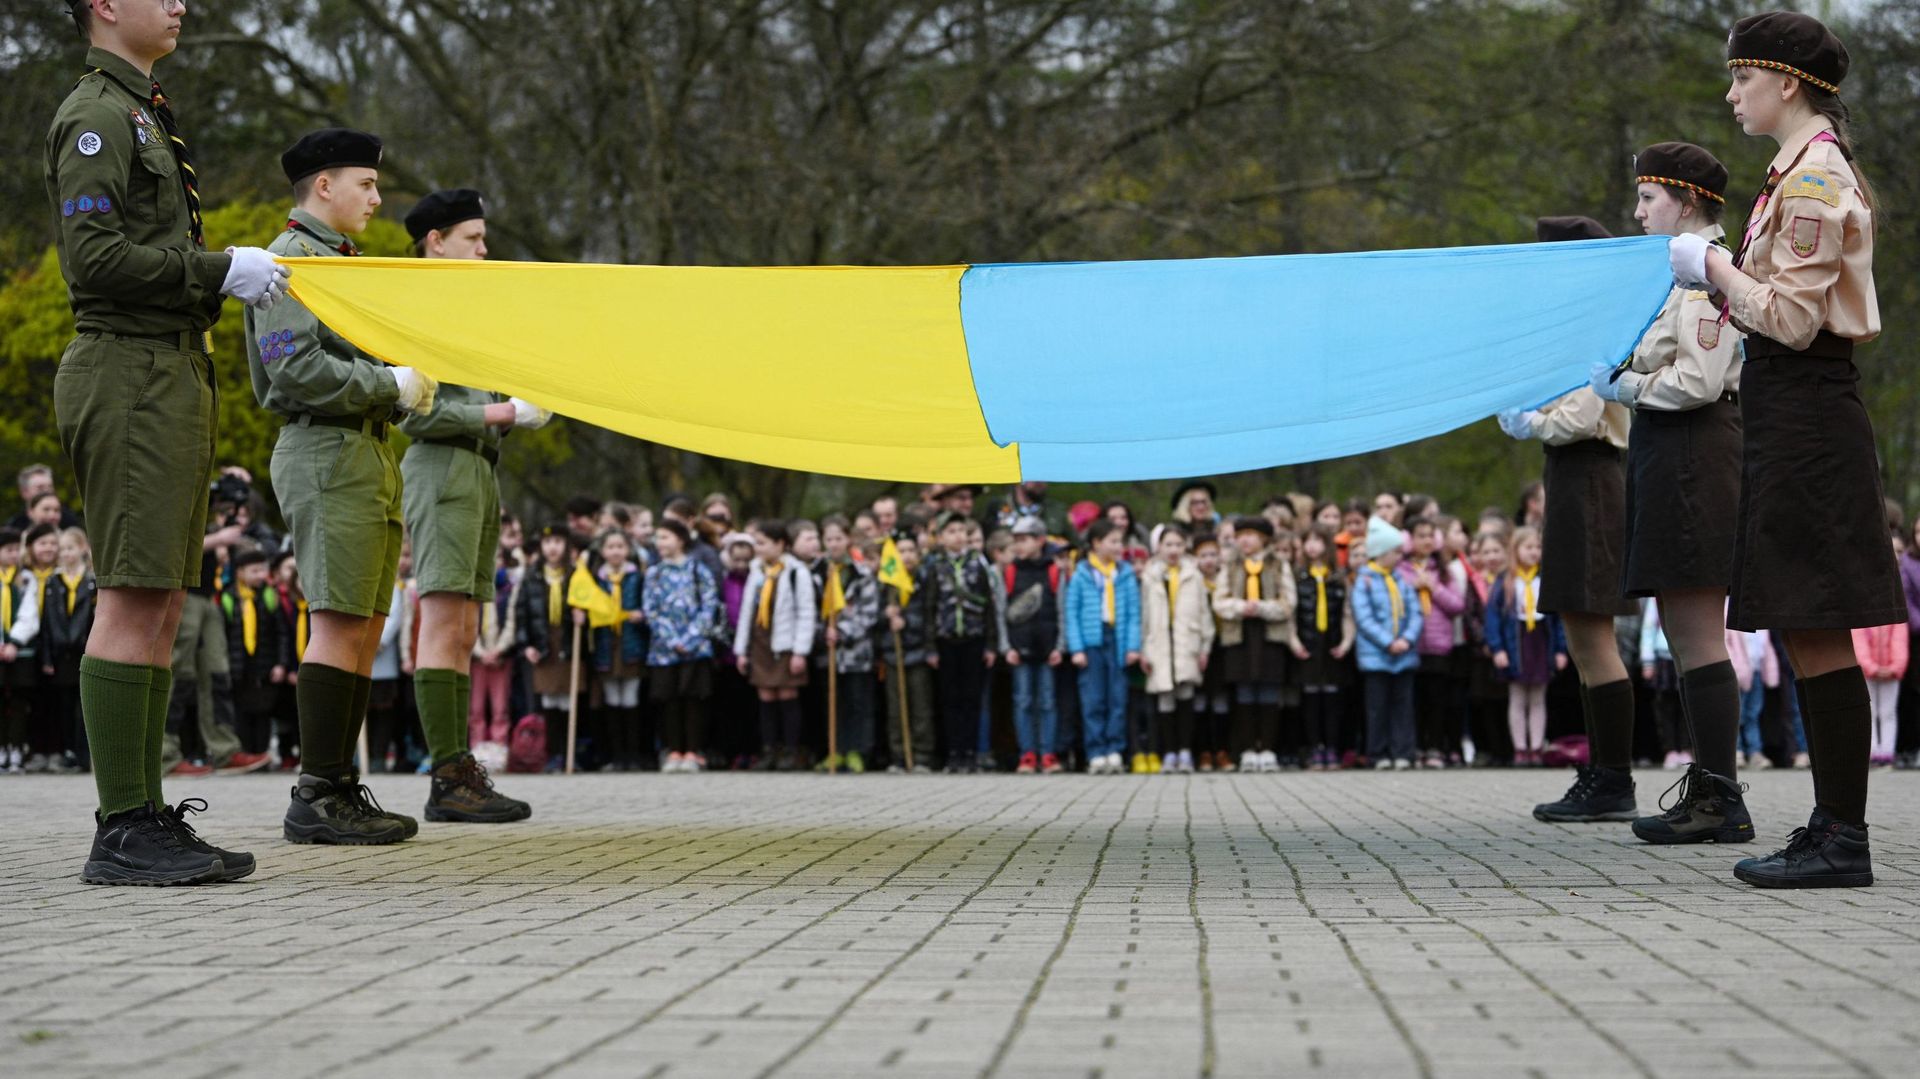 Les scouts d’Ukraine ont organisé une cérémonie marquant le 111e anniversaire de la fondation de leur organisation (Plast) à Lviv, dans l’ouest du pays